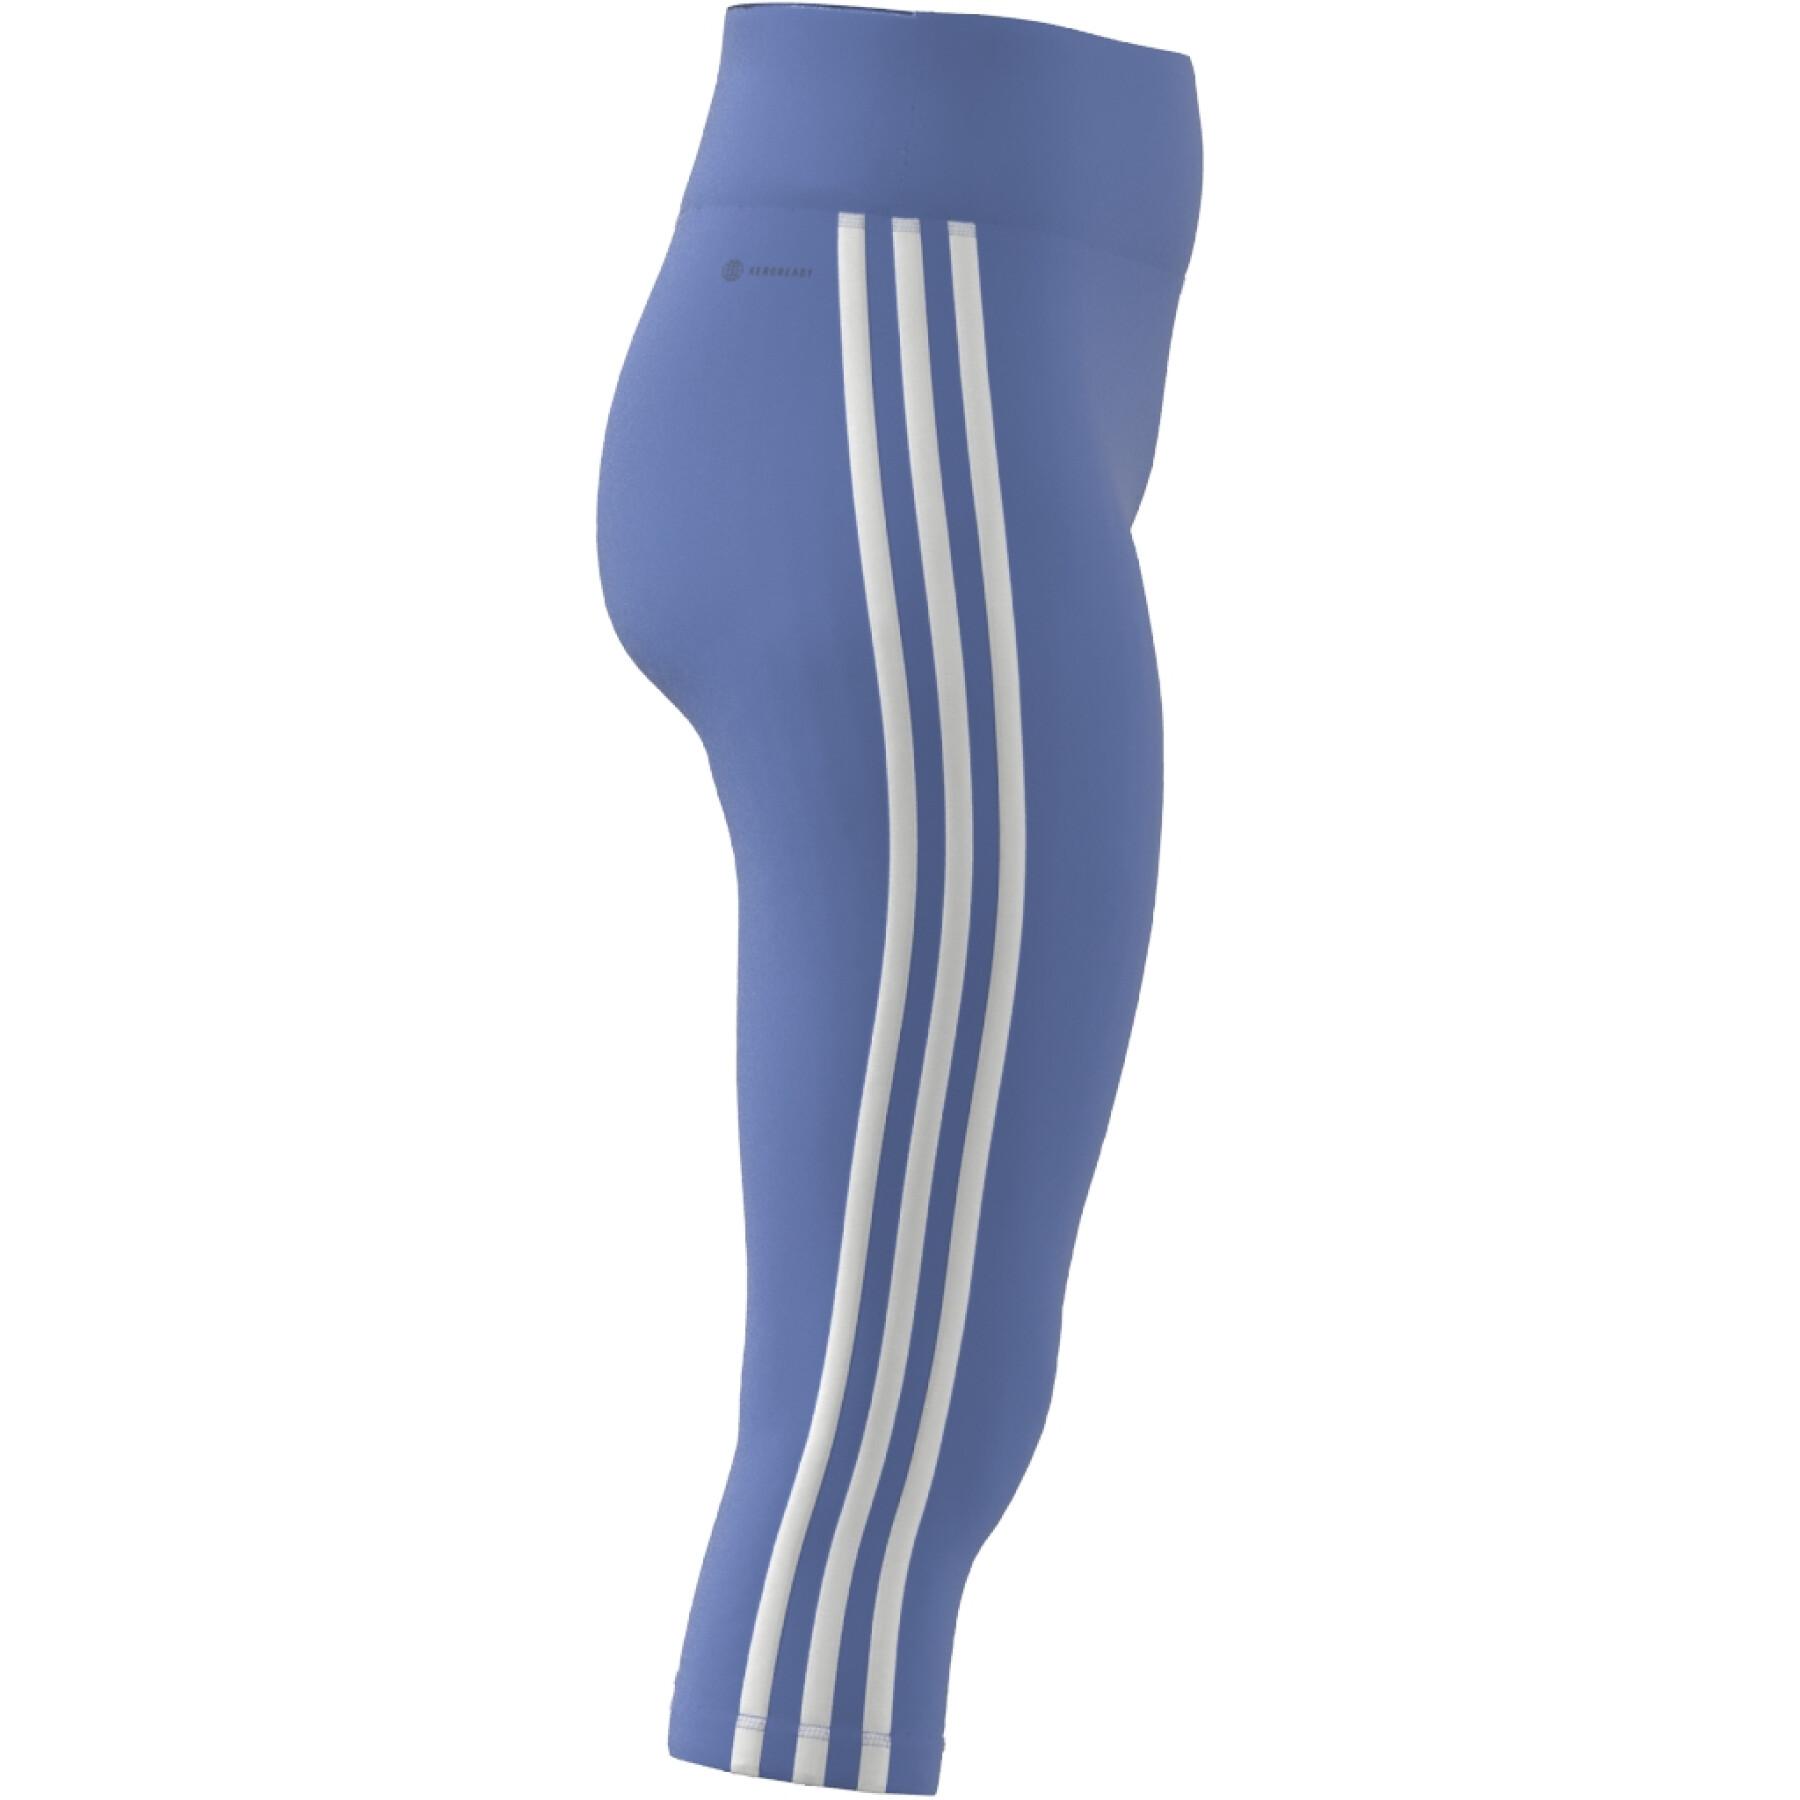 Leggings de mujer con cintura alta 3/4 adidas 3-Stripes Essentials